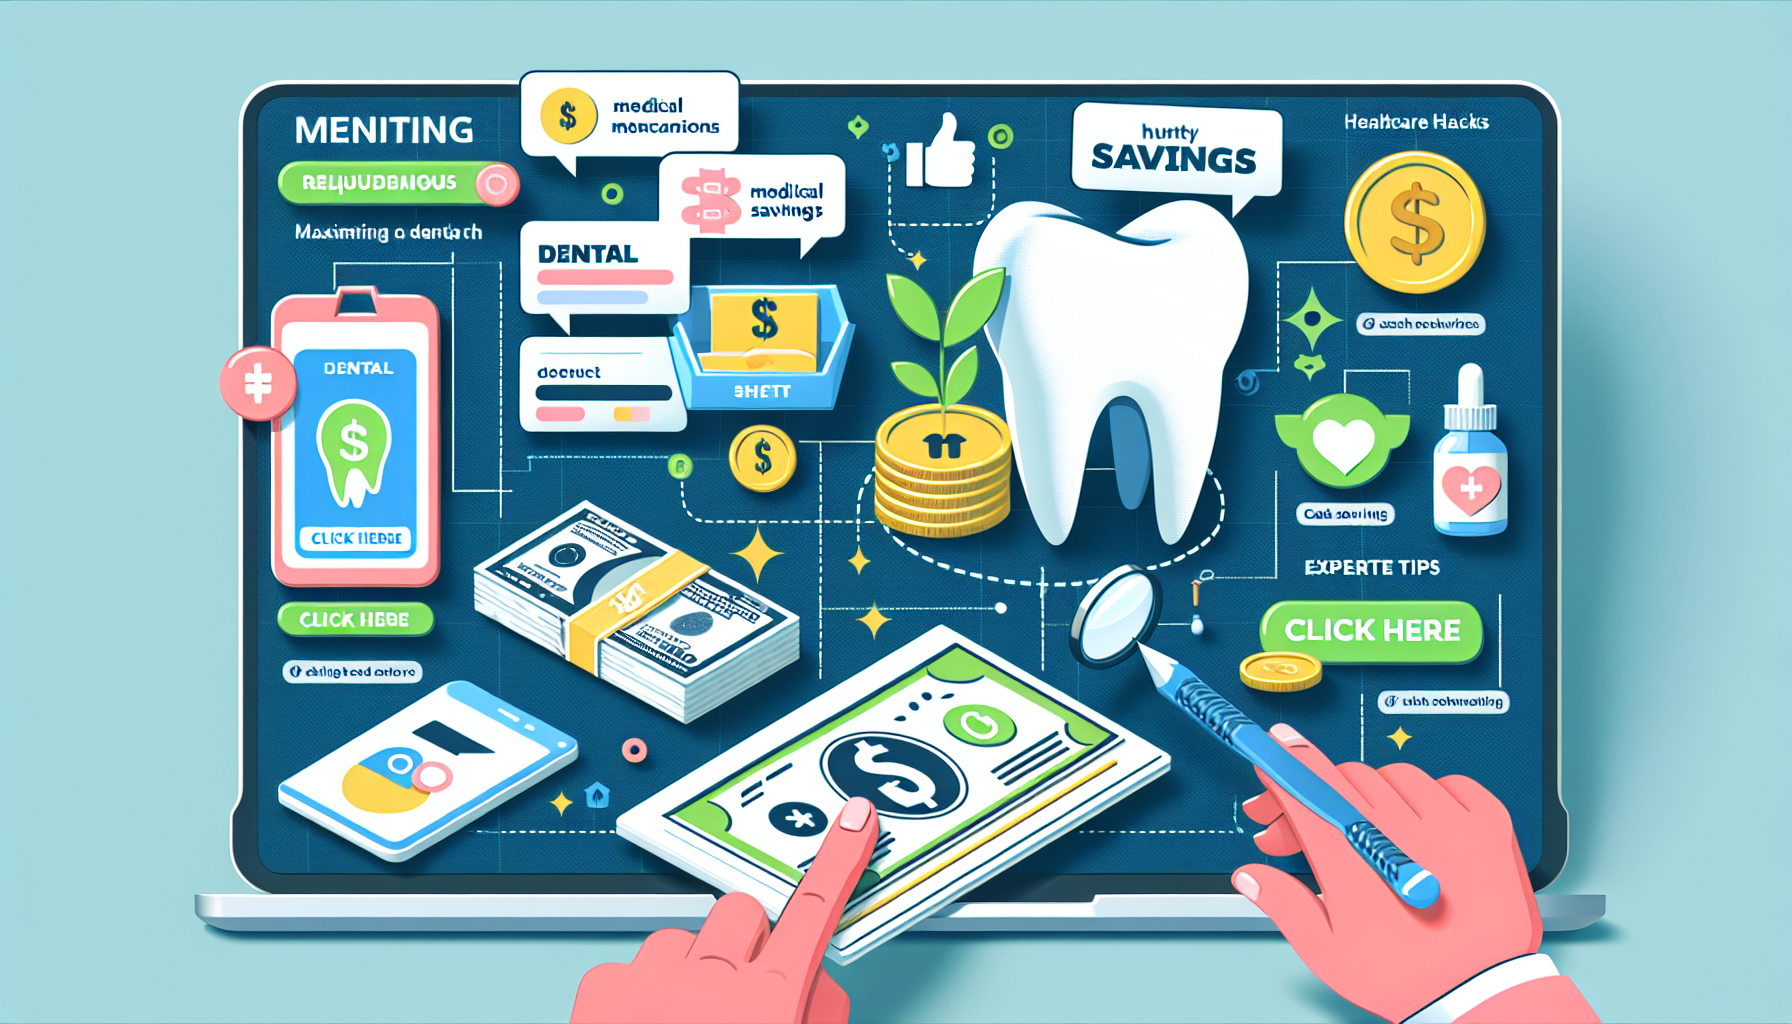 découvrez comment optimiser le remboursement des soins dentaires et bénéficier d'une prise en charge efficace de vos soins médicaux dentaires.